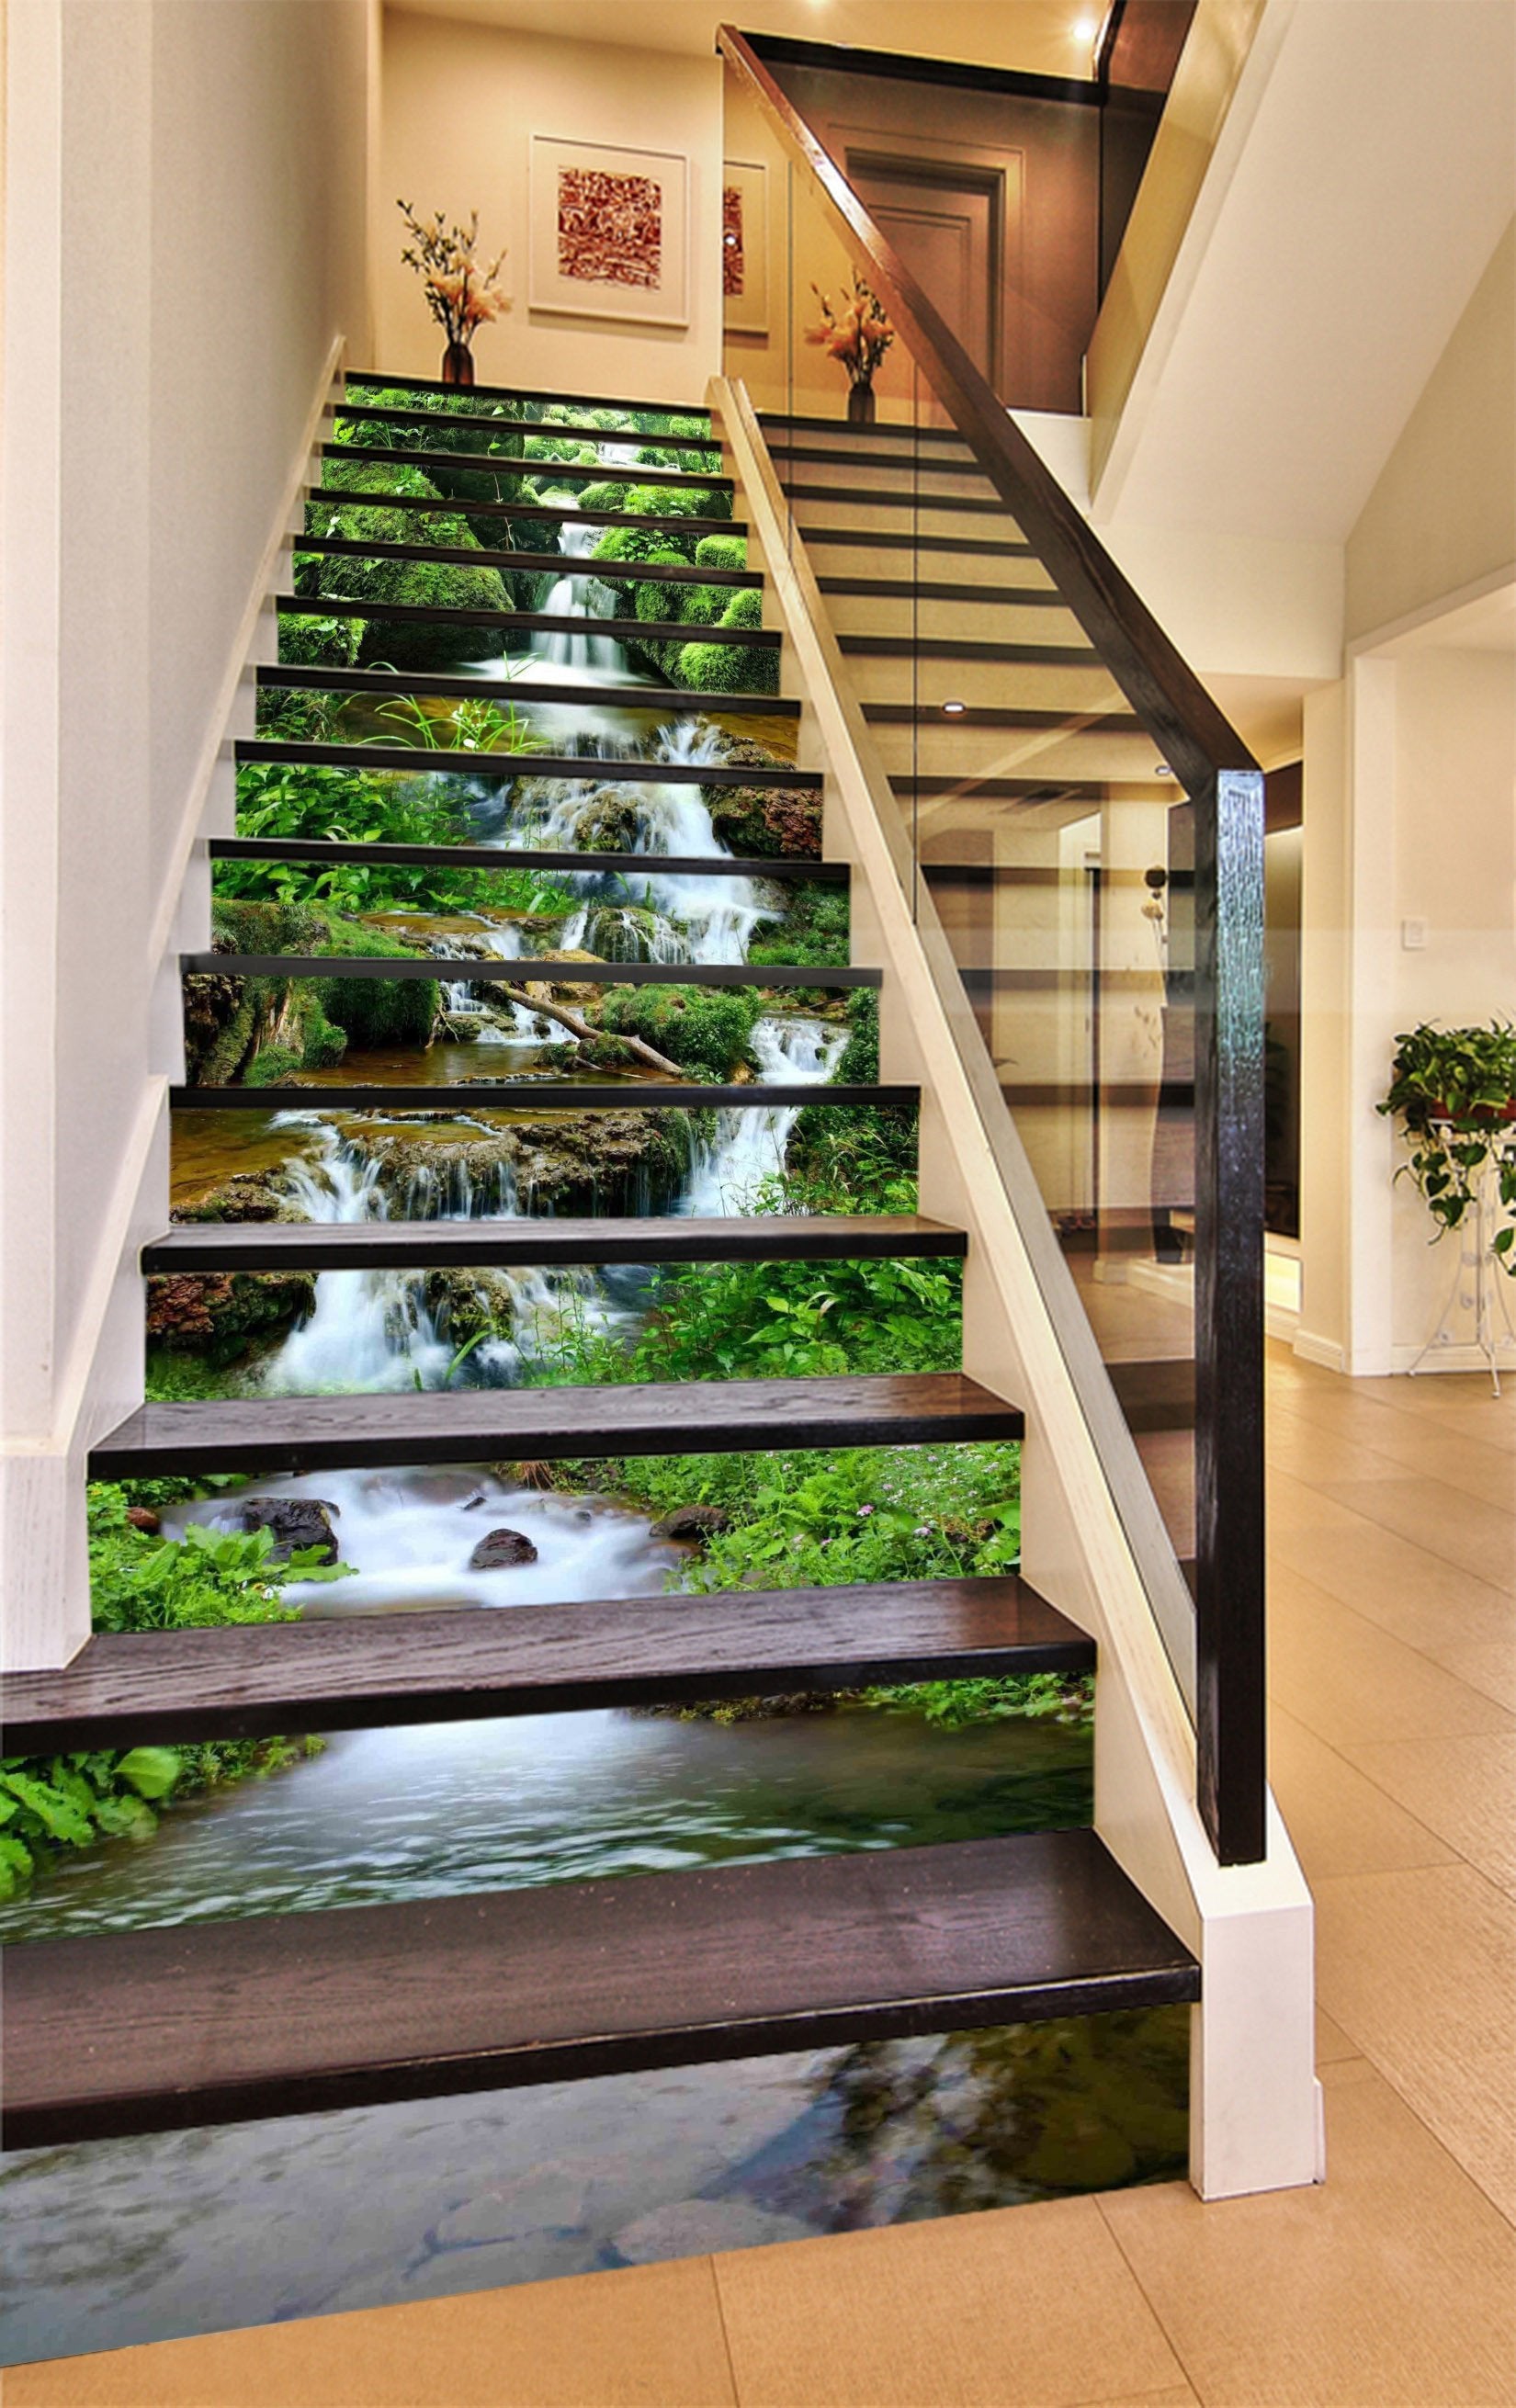 3D Creek Mosses Stones 1356 Stair Risers Wallpaper AJ Wallpaper 